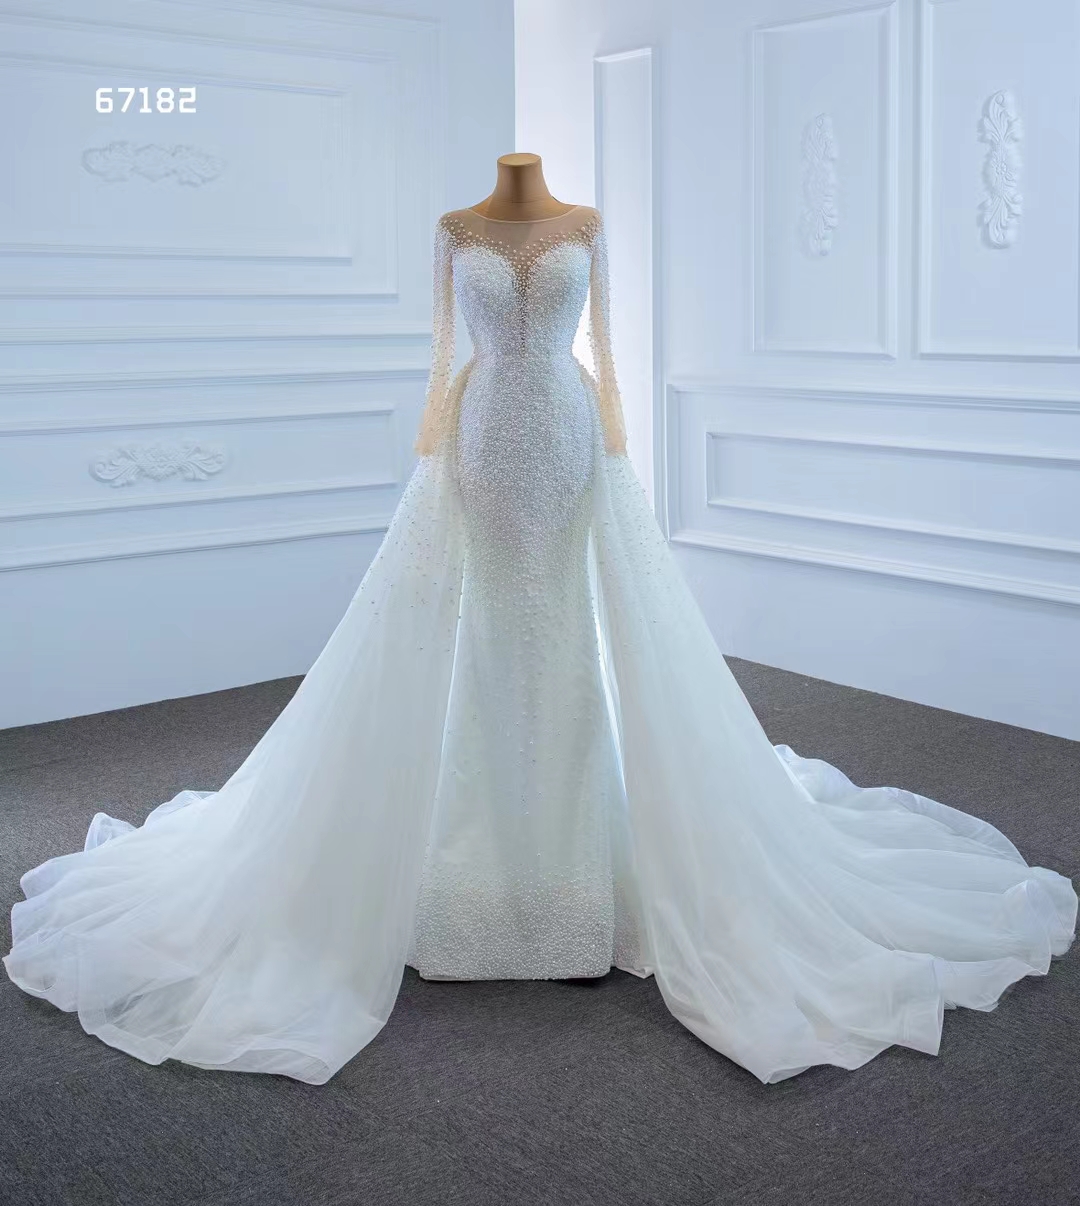 Принцесса с длинным рукавом хрустальное кружевное русалка свадебное платье Robe de Mariage Elegant SM67182